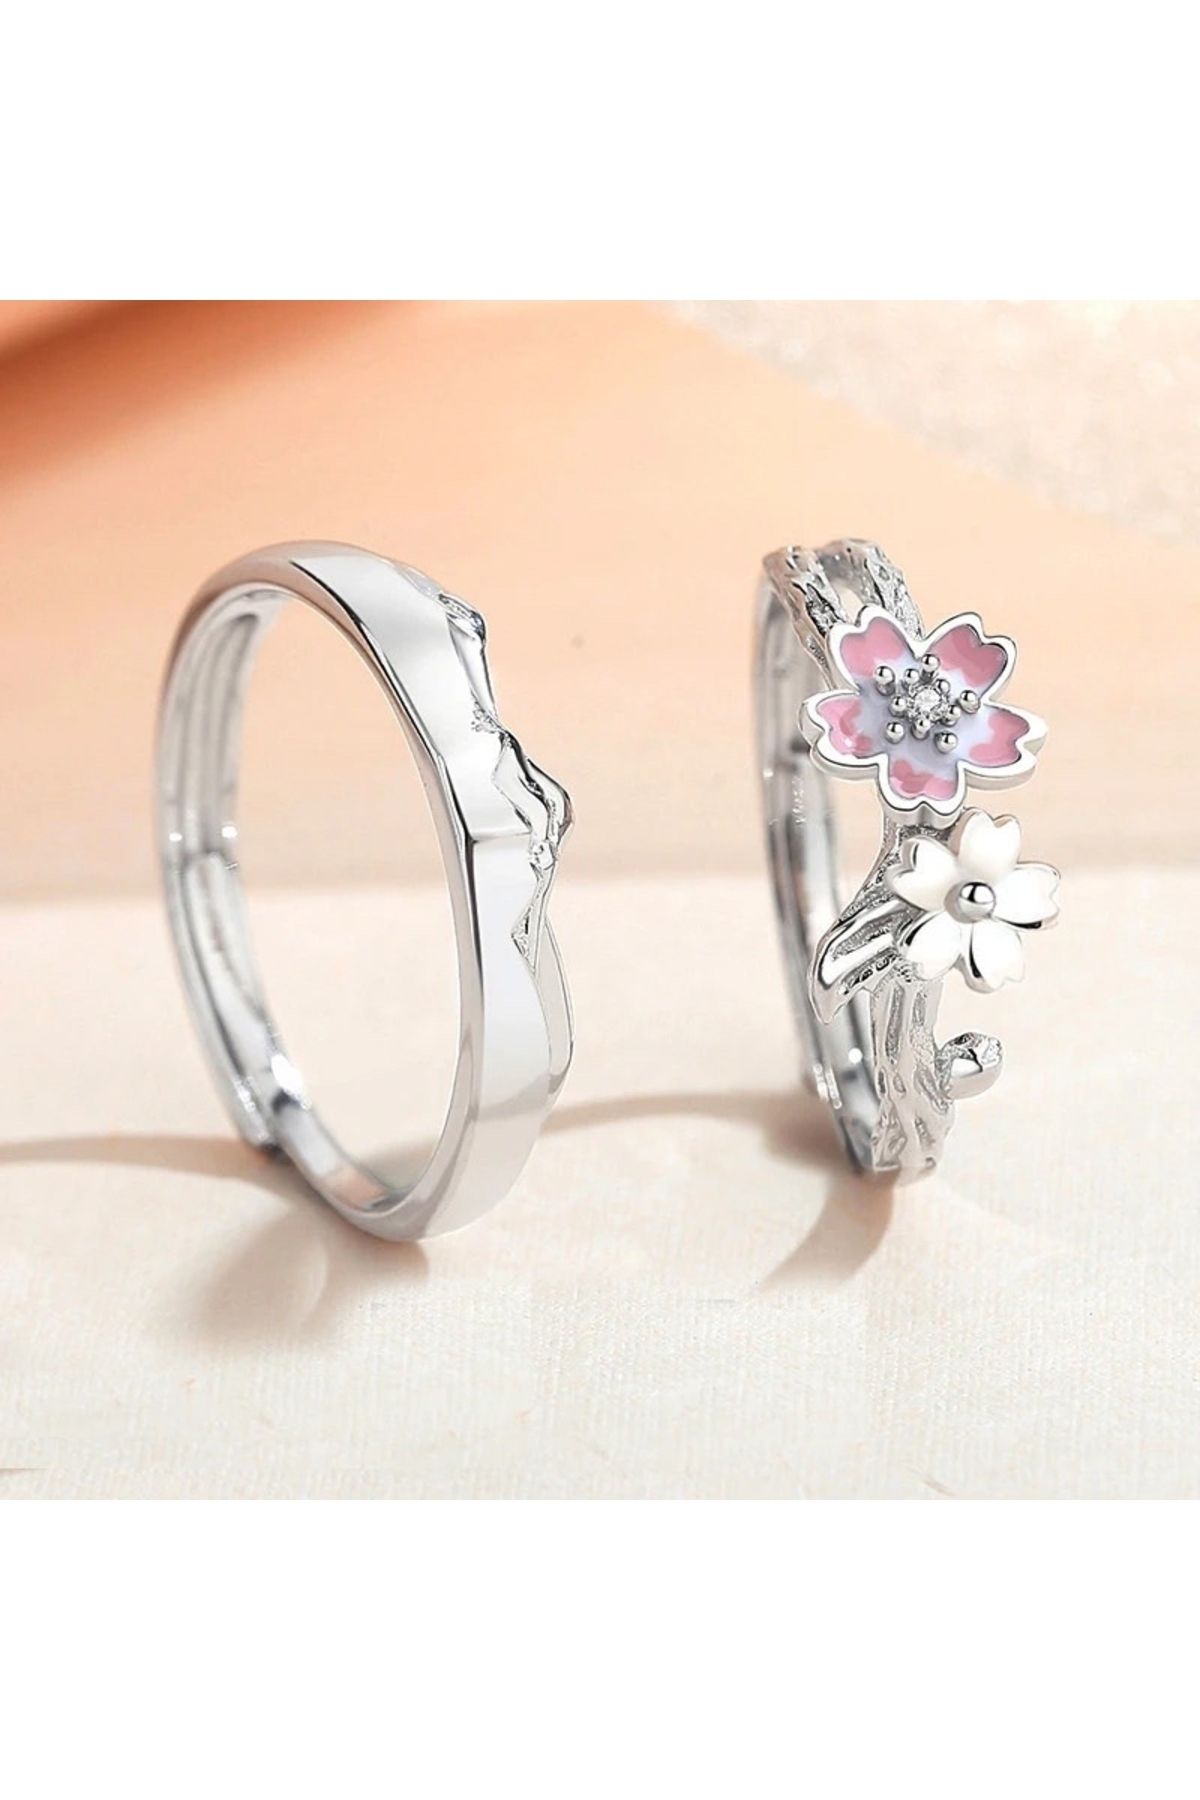 LadyBug Store Kiraz Çiçeğim Temalı Çift Yüzüğü Bakır Sevgili Yüzüğü